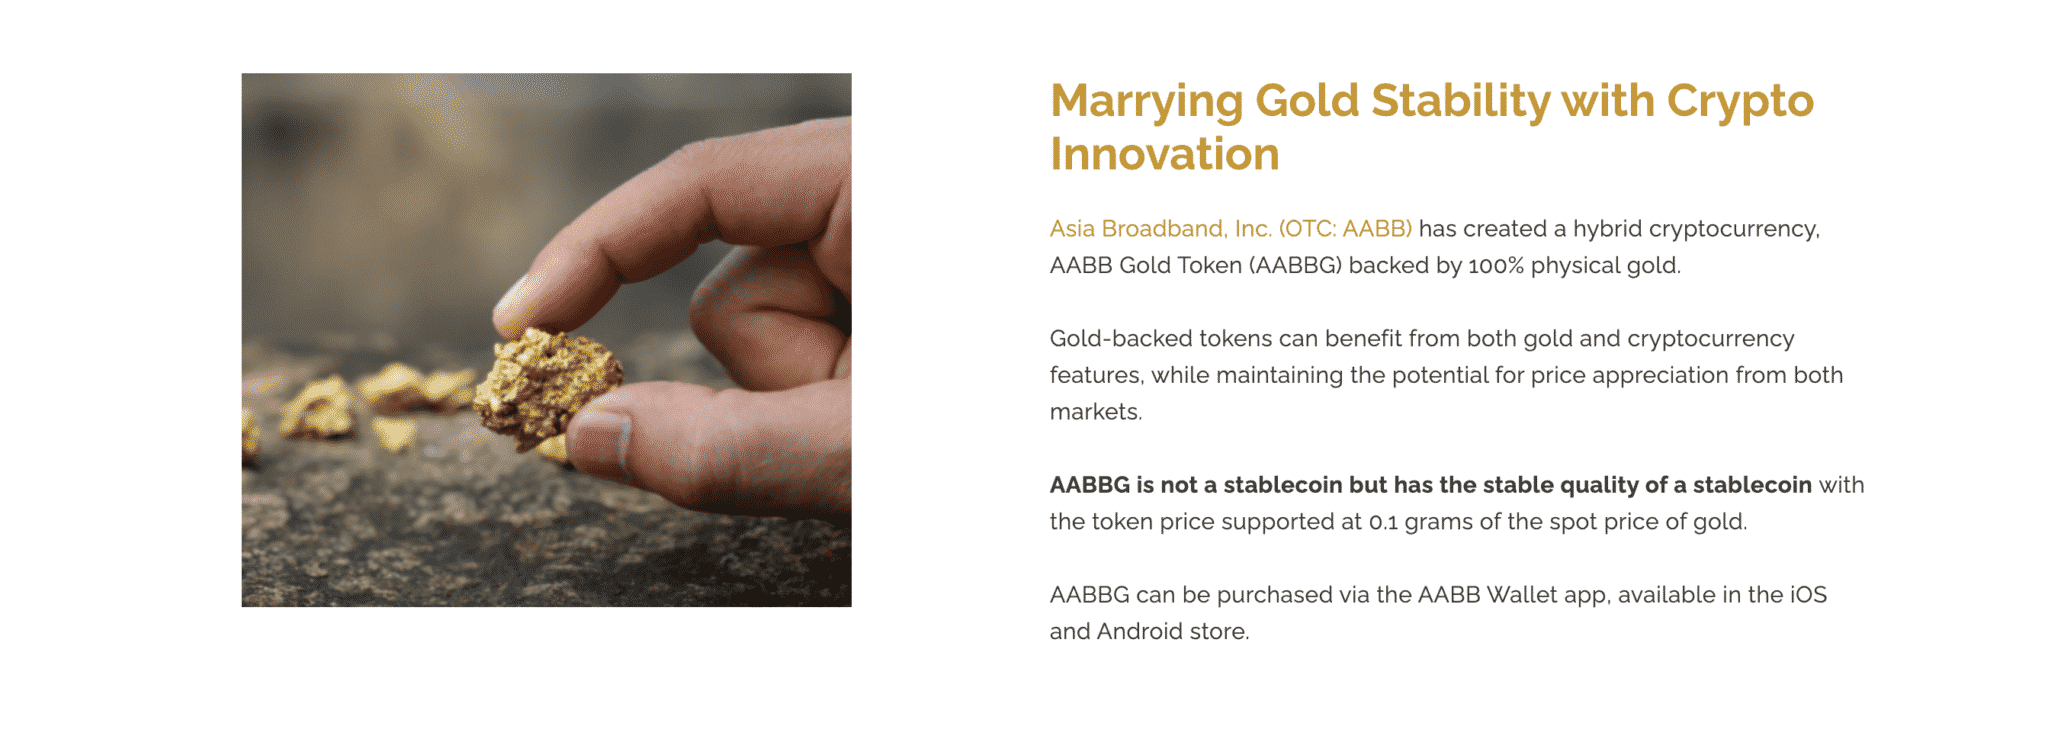 AABB Gold-Token